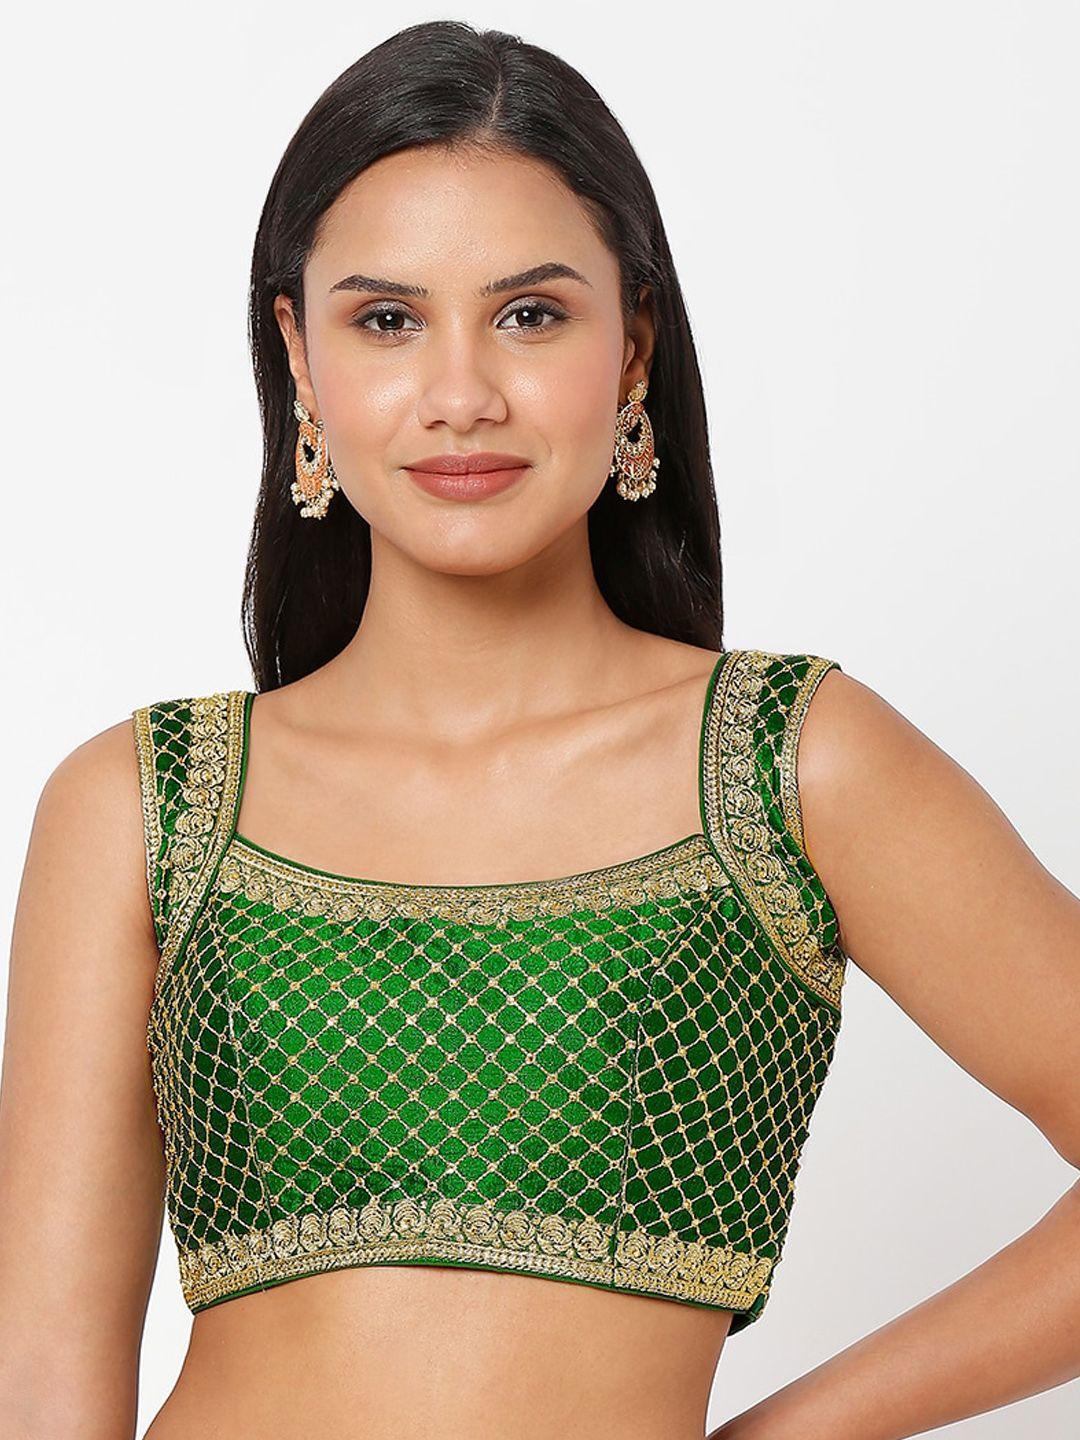 salwar studio green embroidered saree blouse